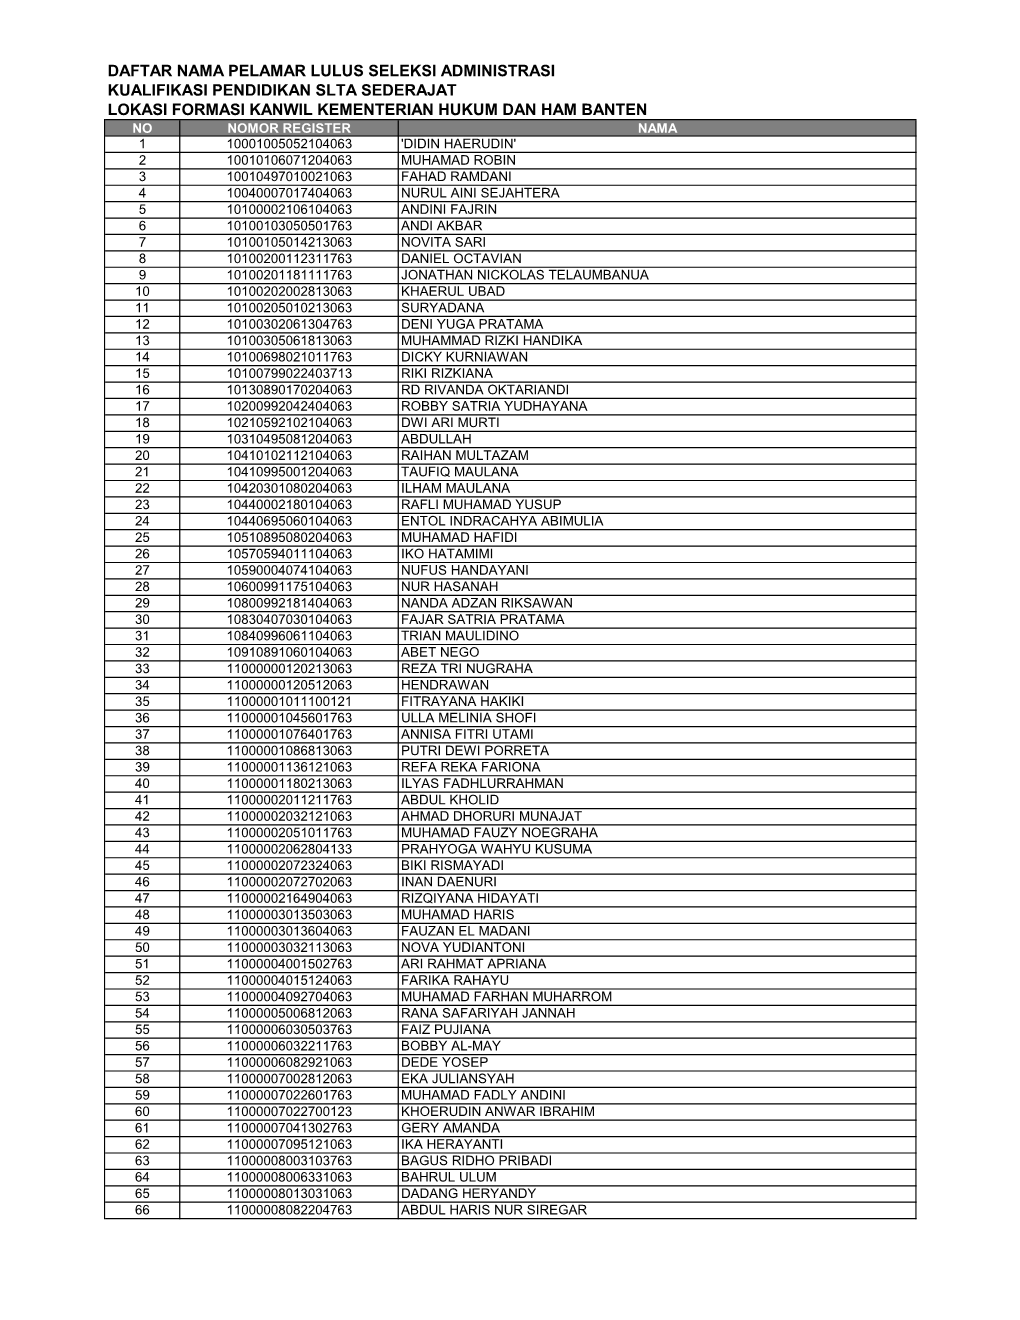 Daftar Nama Pelamar Lulus Seleksi Administrasi Kualifikasi Pendidikan Slta Sederajat Lokasi Formasi Kanwil Kementerian Hukum Dan Ham Banten